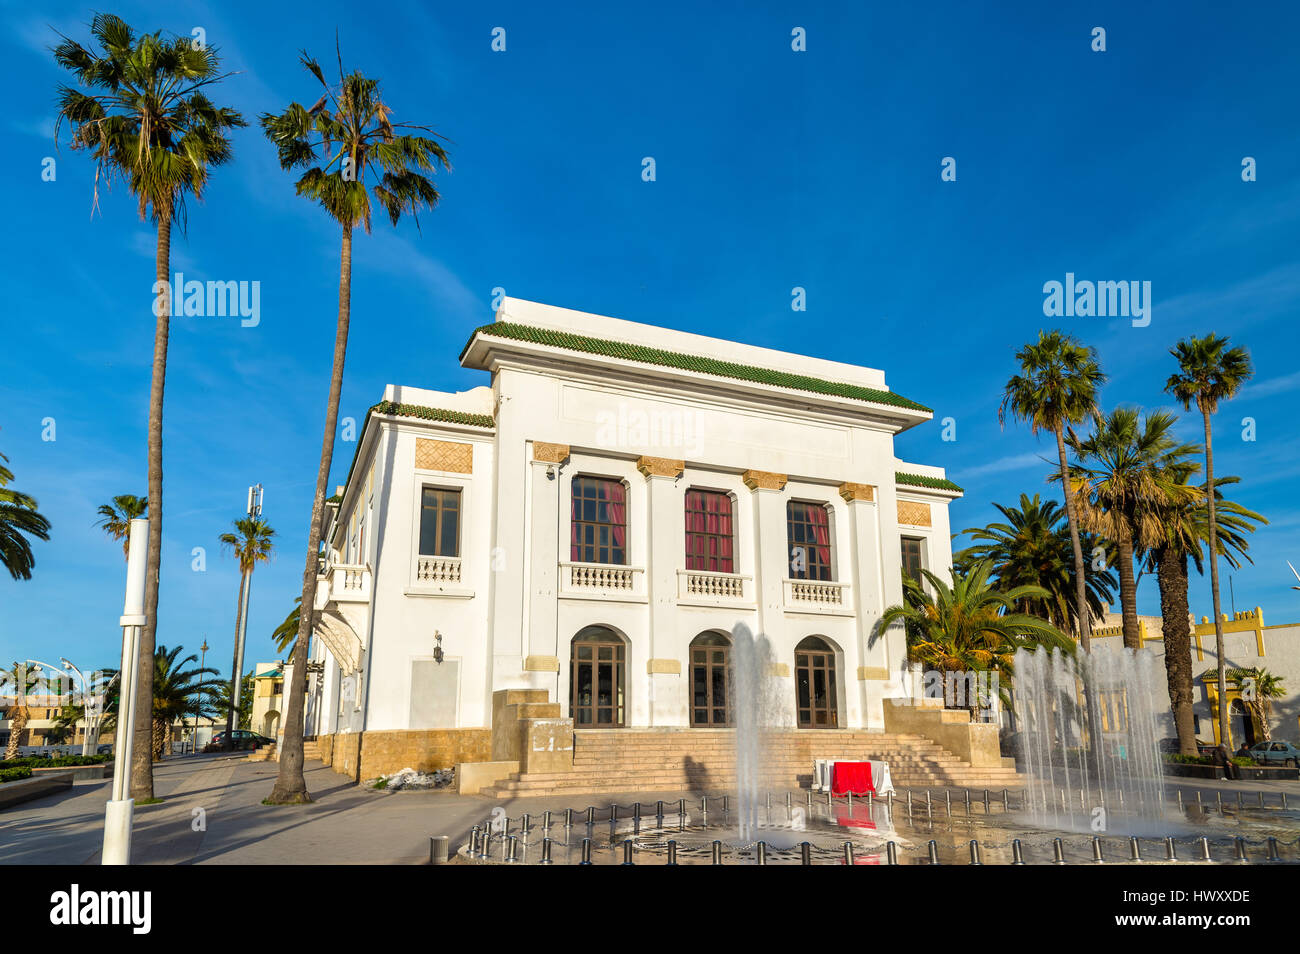 Théâtre Municipal d'El Jadida, Maroc Banque D'Images